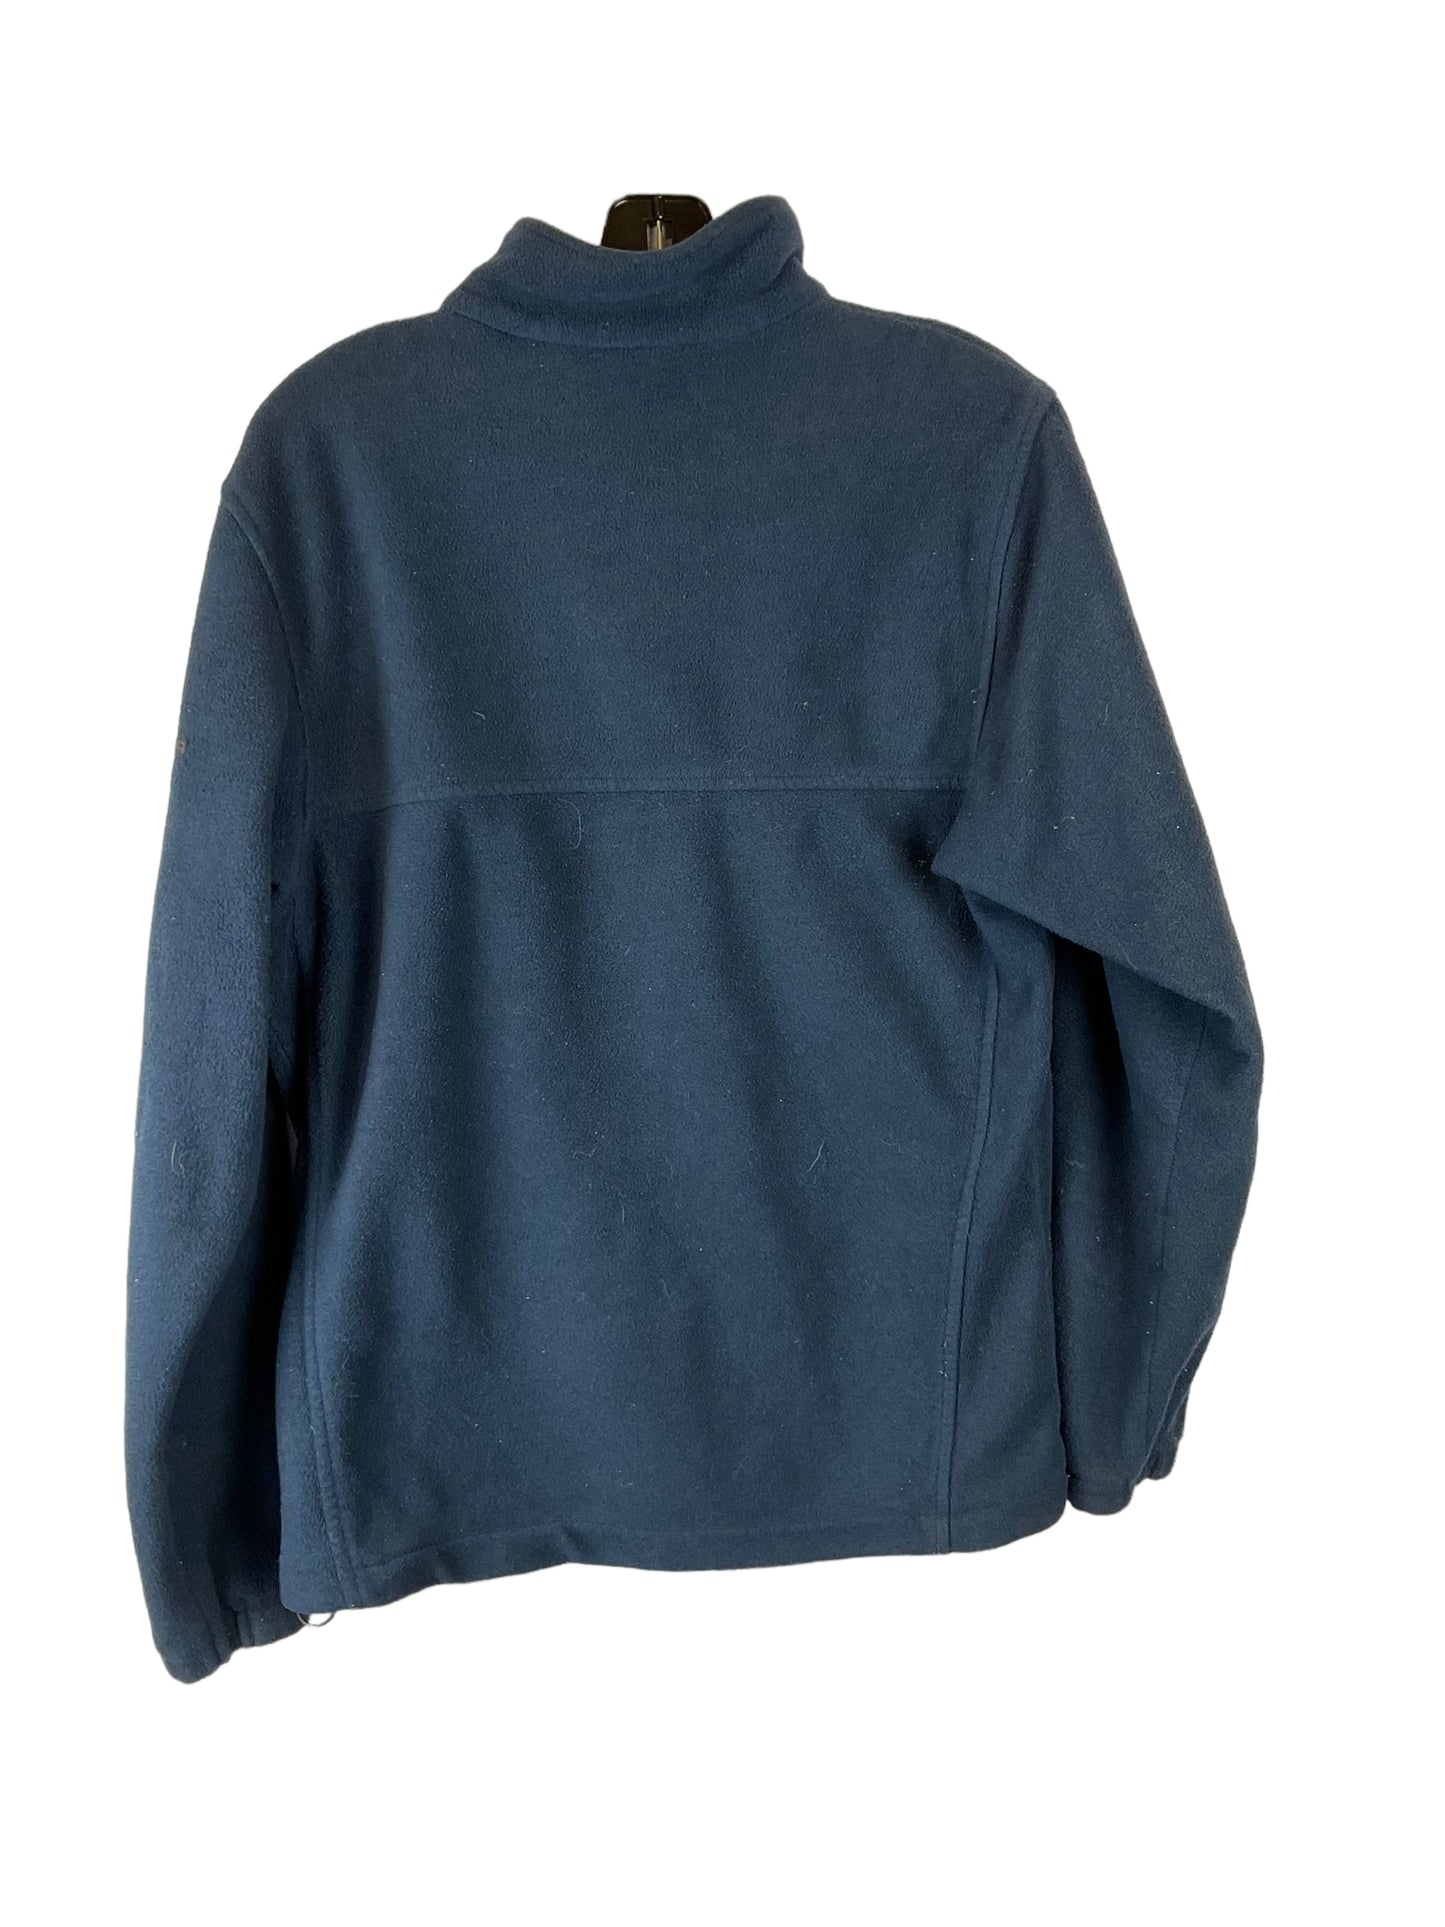 Jacket Fleece By Columbia  Size: M